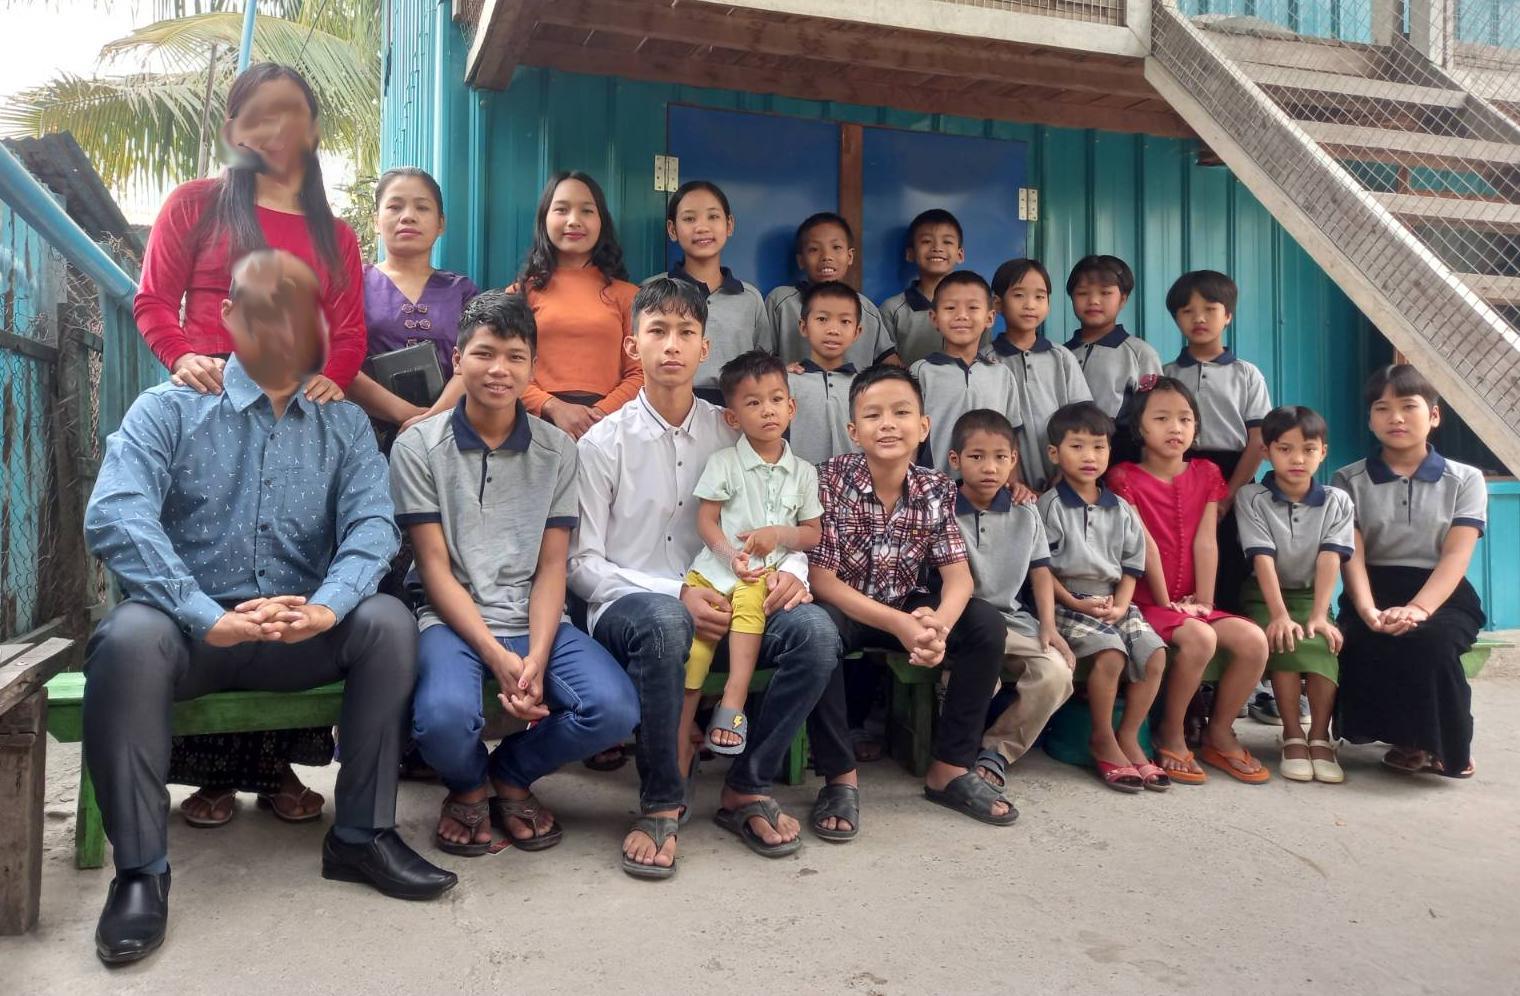 Eighteen Myanmar orphans